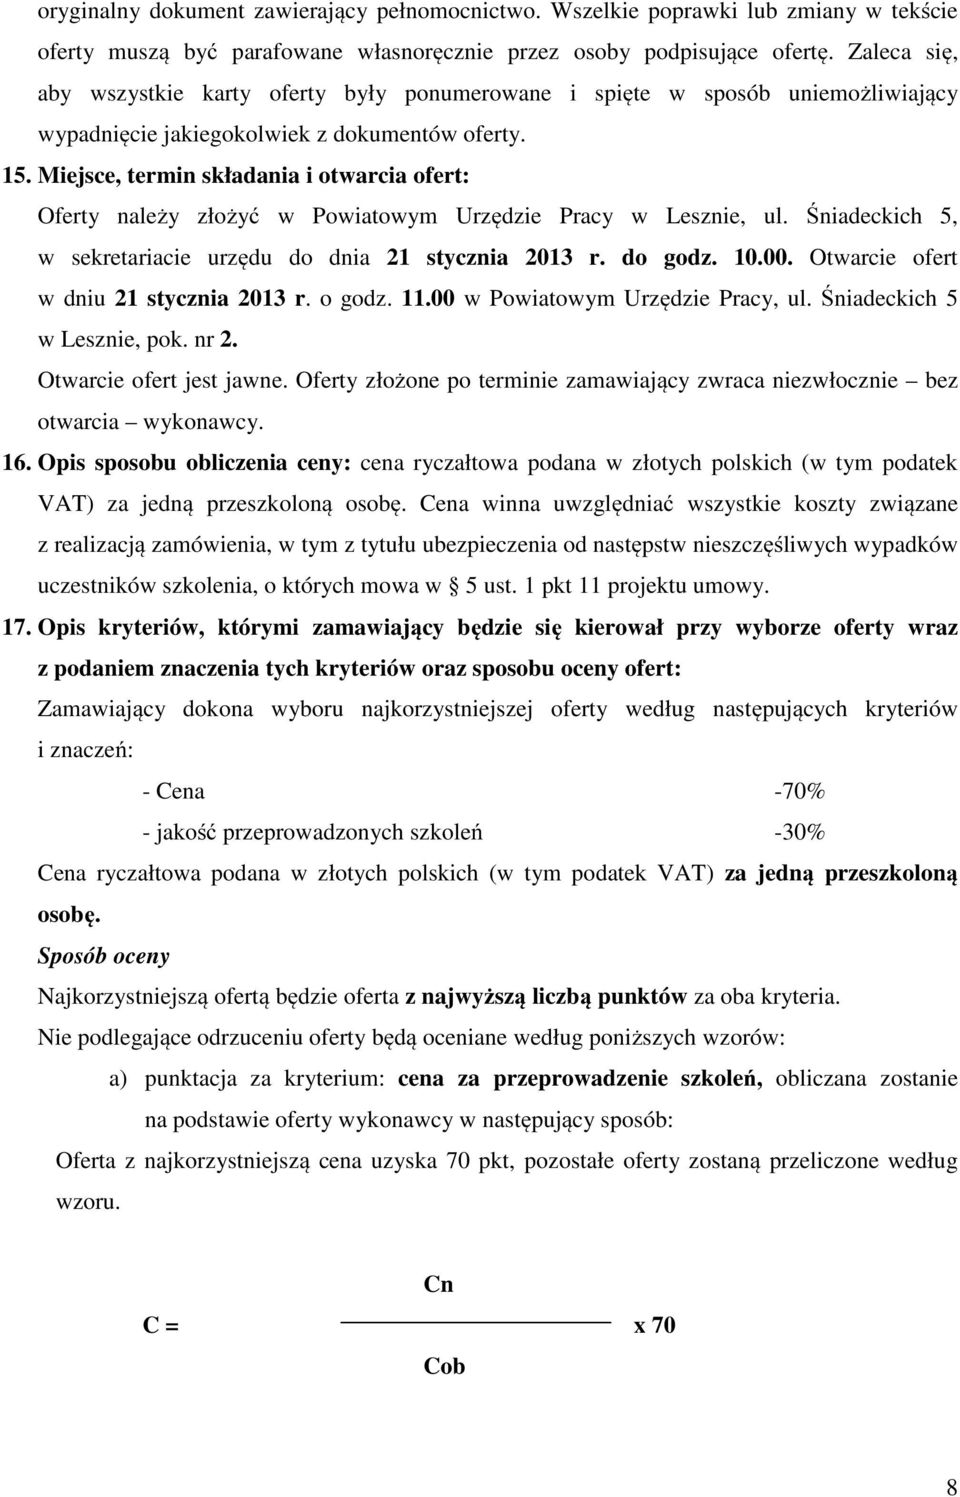 Miejsce, termin składania i otwarcia ofert: Oferty należy złożyć w Powiatowym Urzędzie Pracy w Lesznie, ul. Śniadeckich 5, w sekretariacie urzędu do dnia 21 stycznia 2013 r. do godz. 10.00.